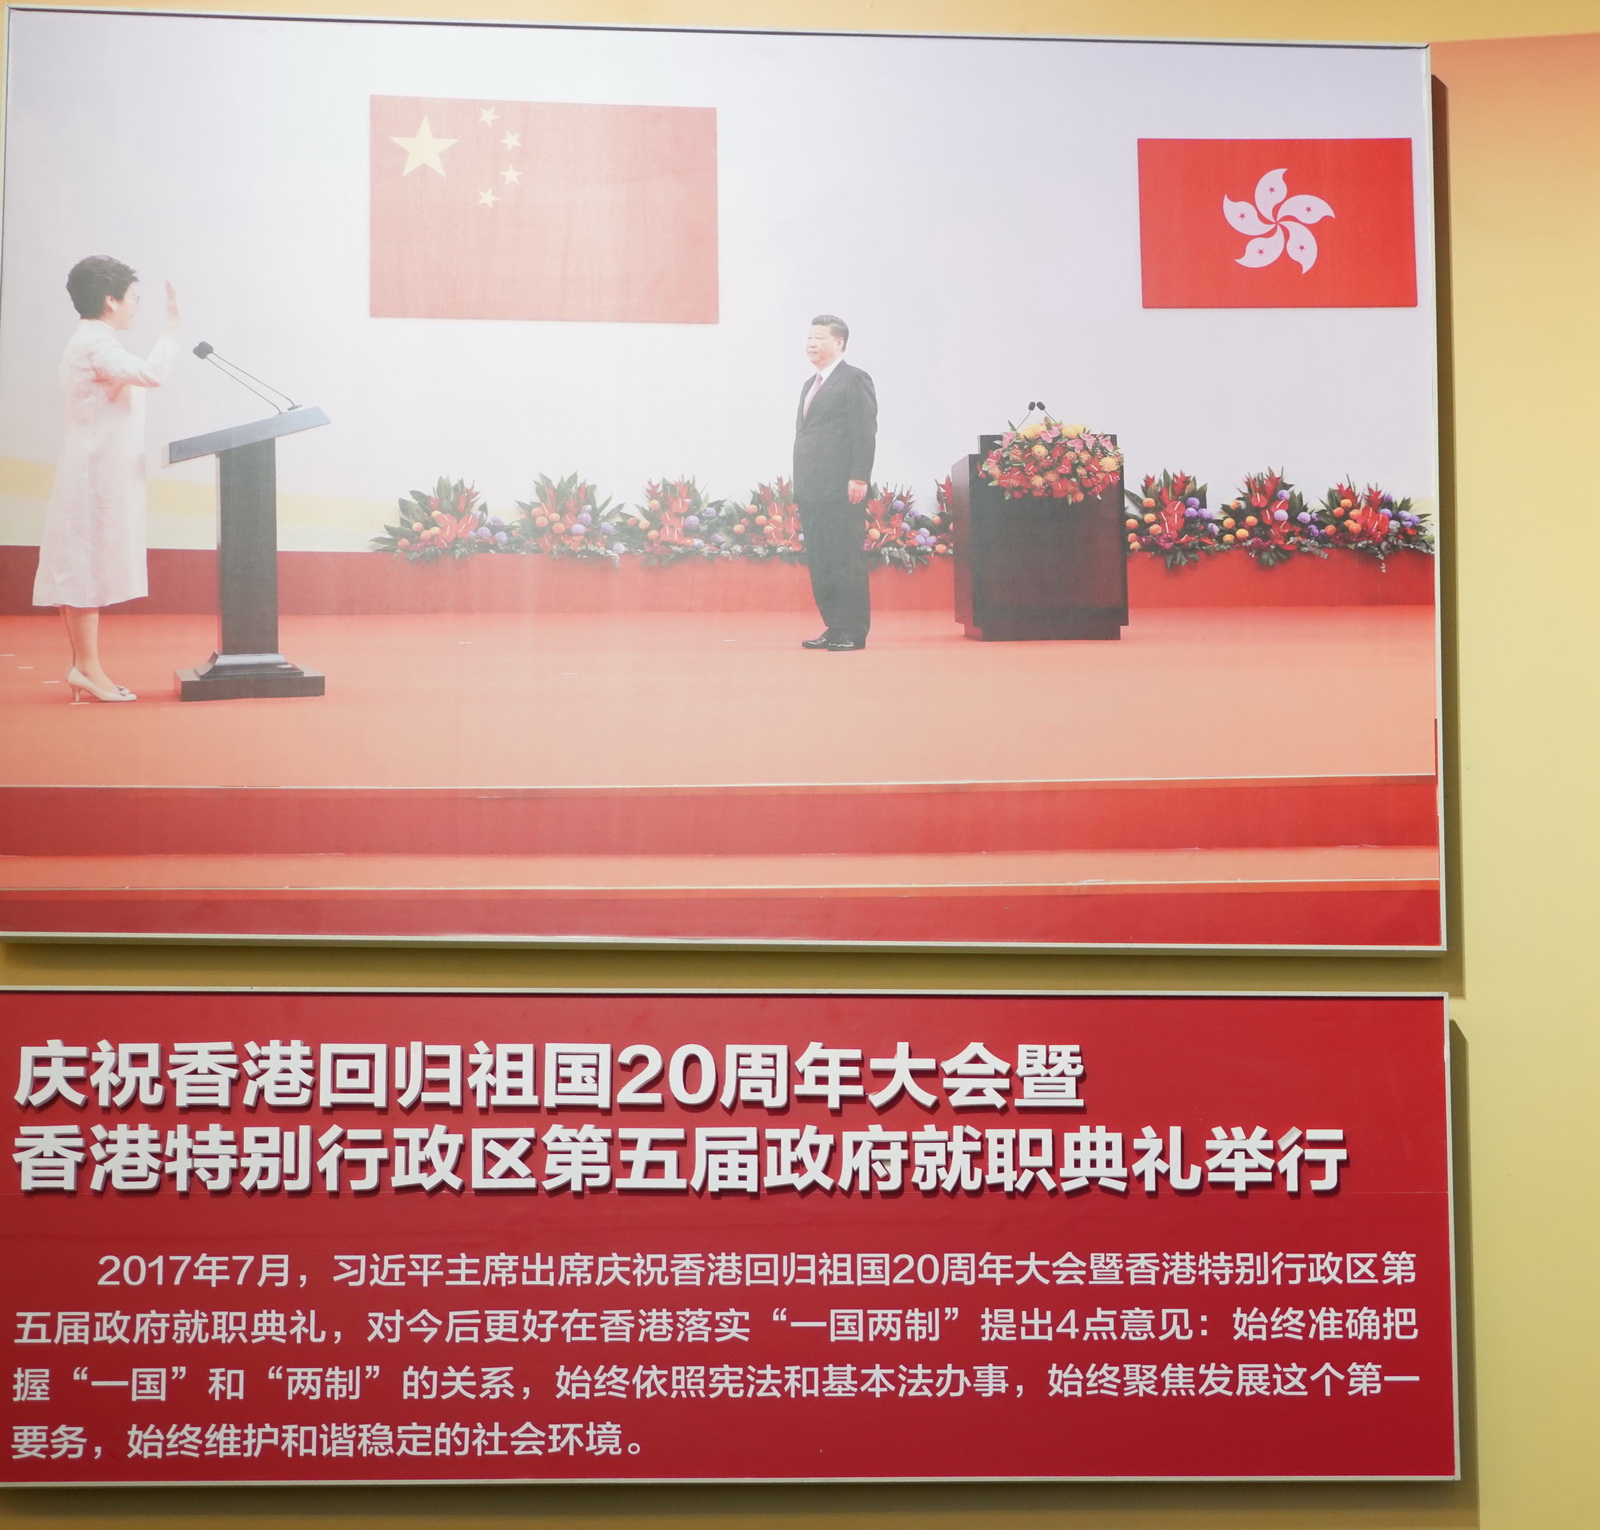 慶祝香港回歸祖國20周年大會暨香港特別行政區第五屆政府就職典禮舉行。